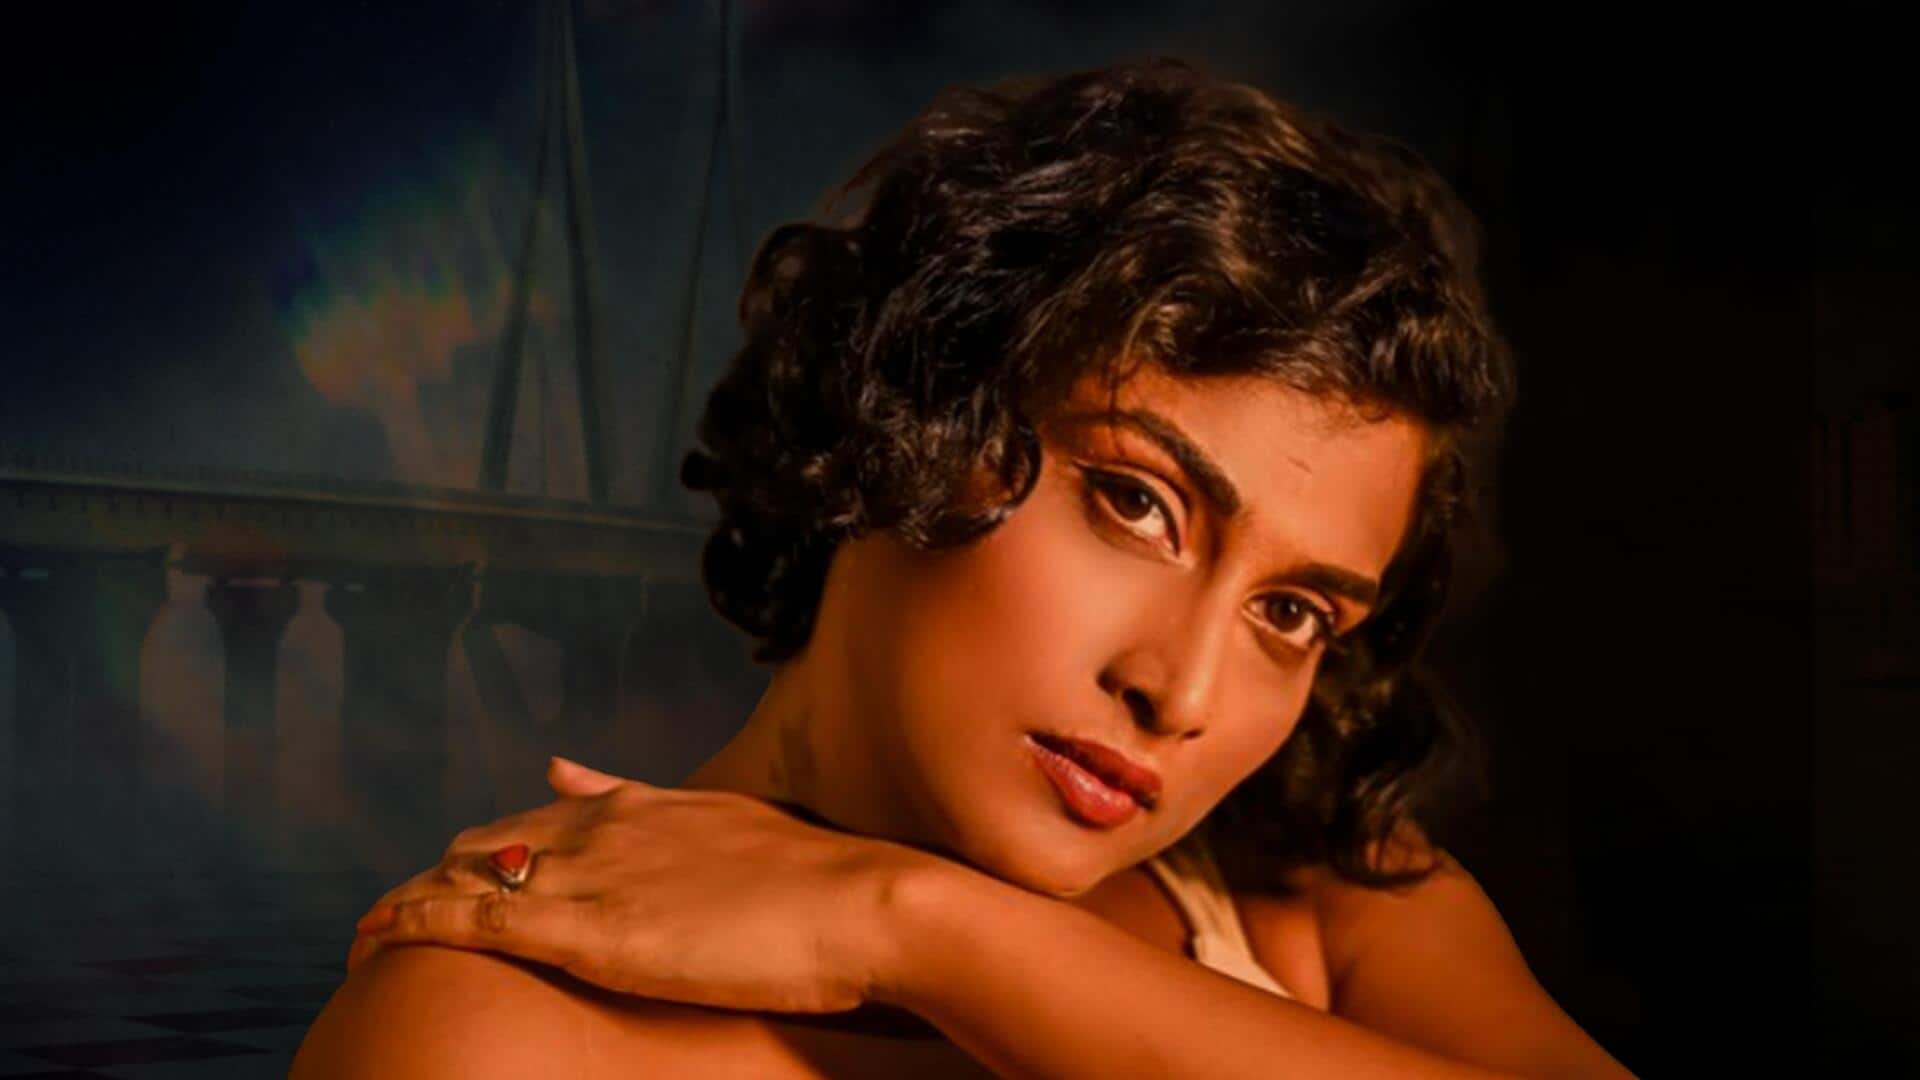 प्रांशु की आत्महत्या के बाद अभिनेत्री इवांका दास ने सुनाई आपबीती, आत्महत्या का भी आया ख्याल